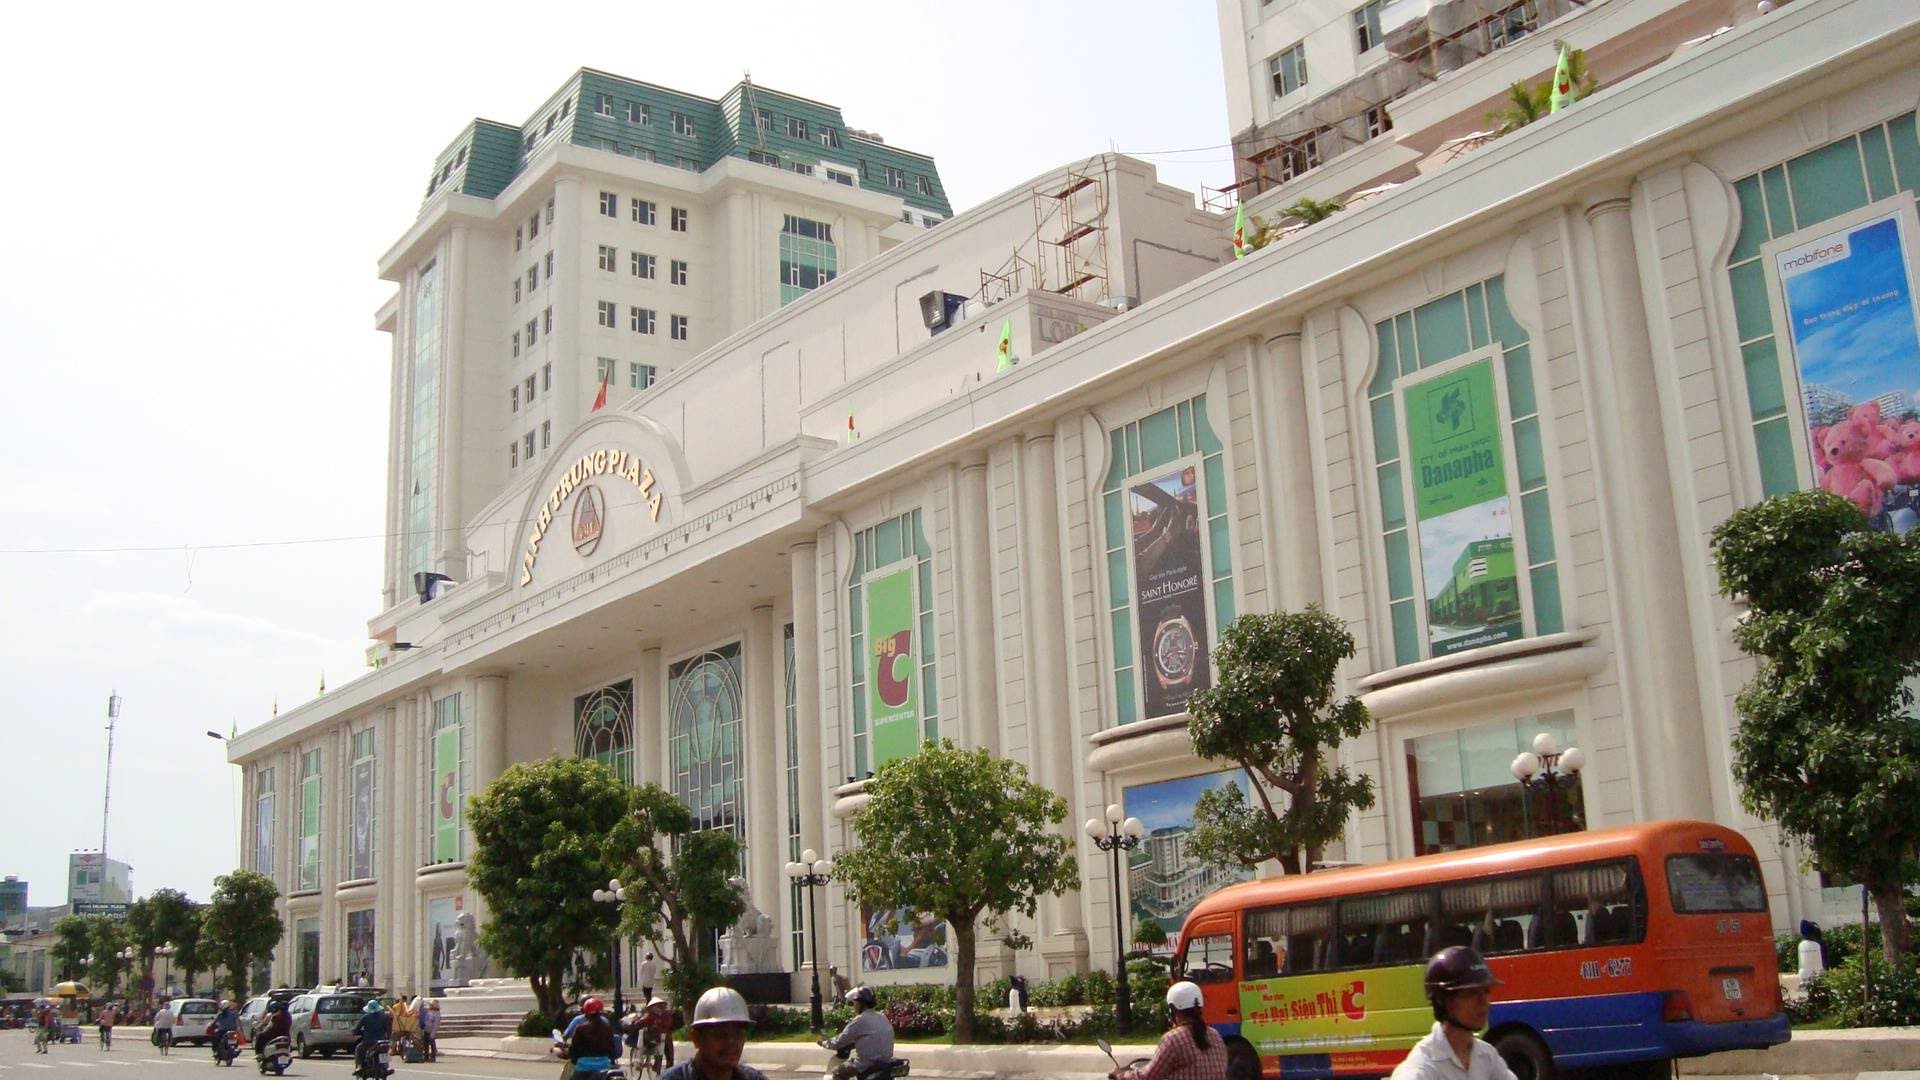 CGV Đà Nẵng – Vĩnh Trung Plaza: giá vé, review rạp chiếu phim, lịch chiếu mới